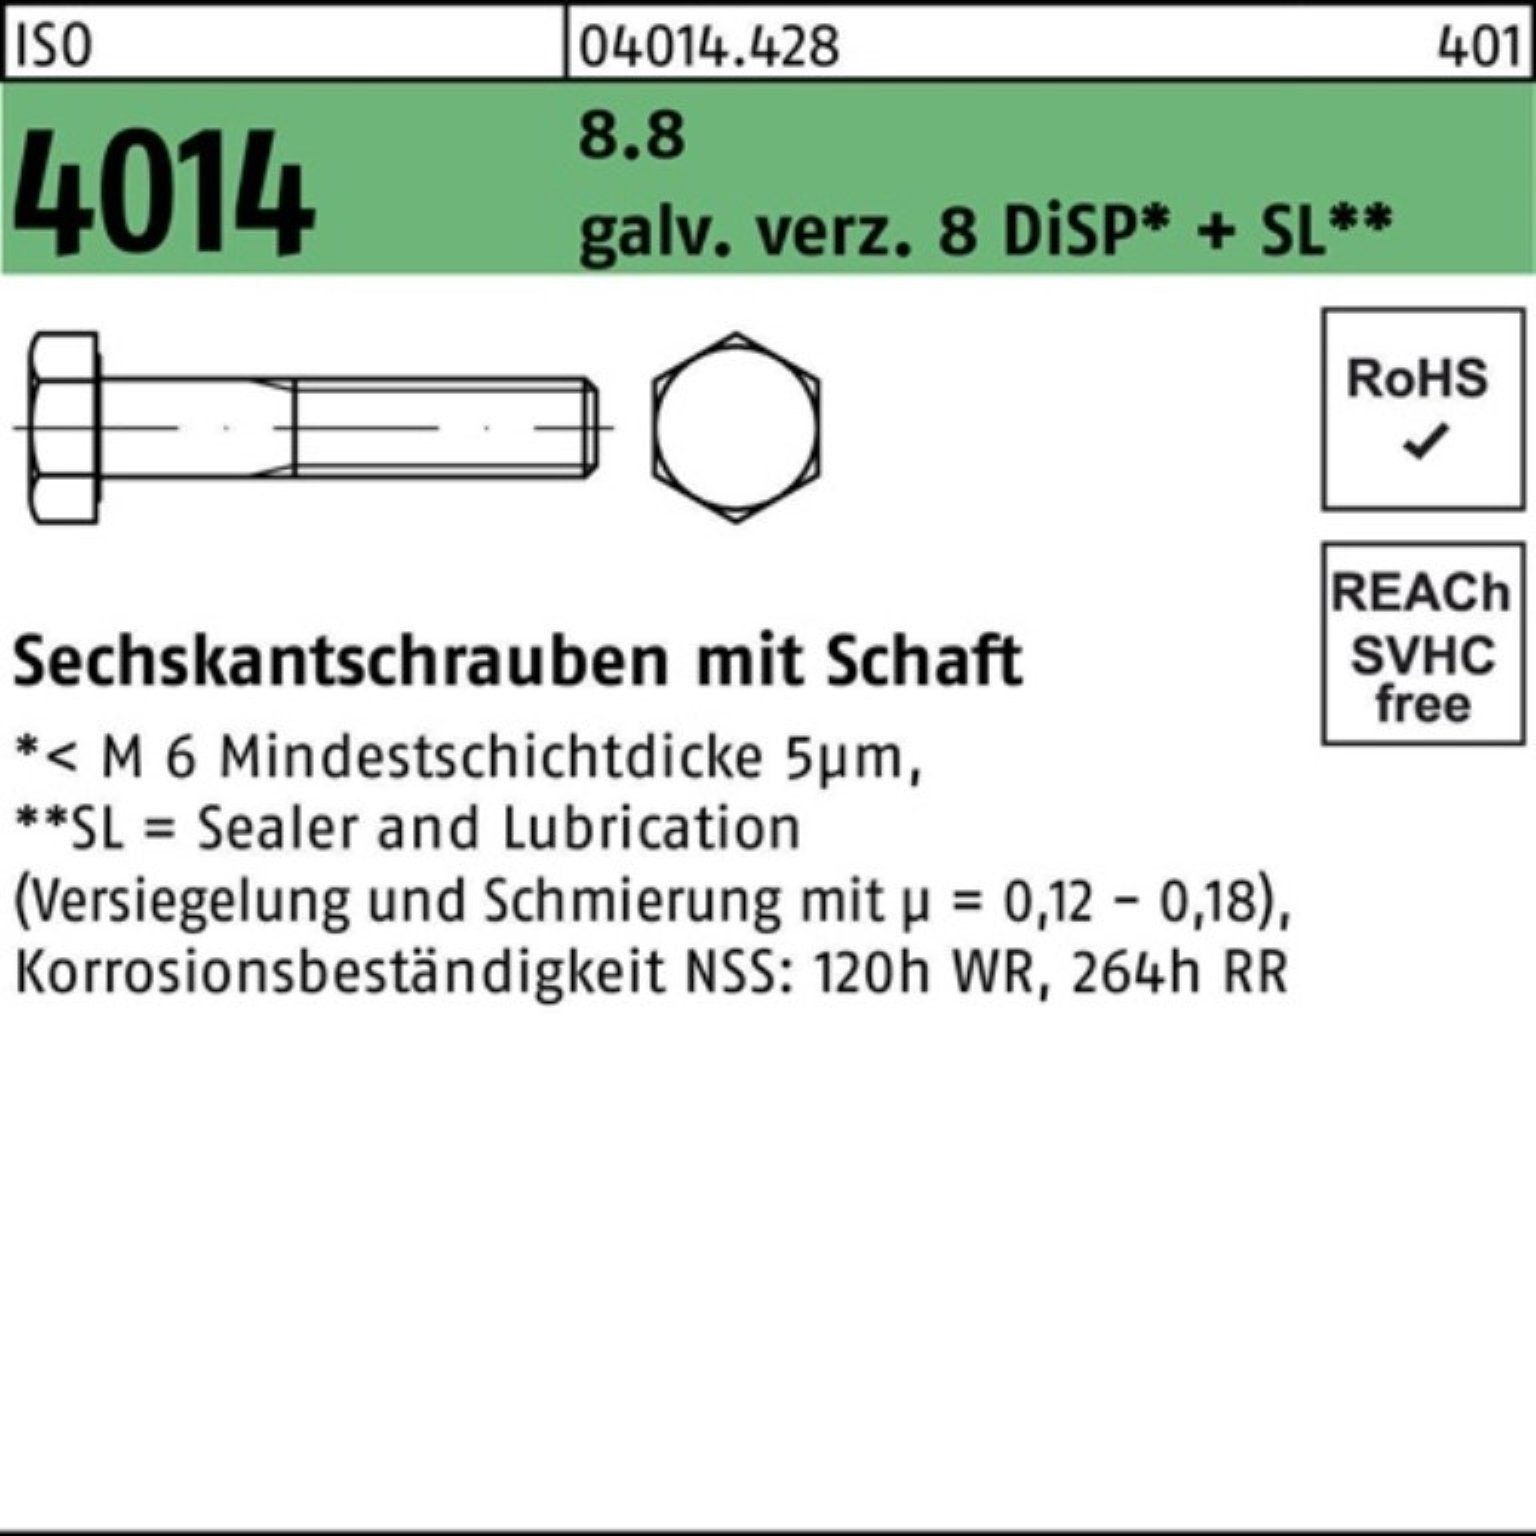 Bufab Sechskantschraube 100er Pack Sechskantschraube ISO 4014 Schaft M20x240 8.8 galv.verz. 8